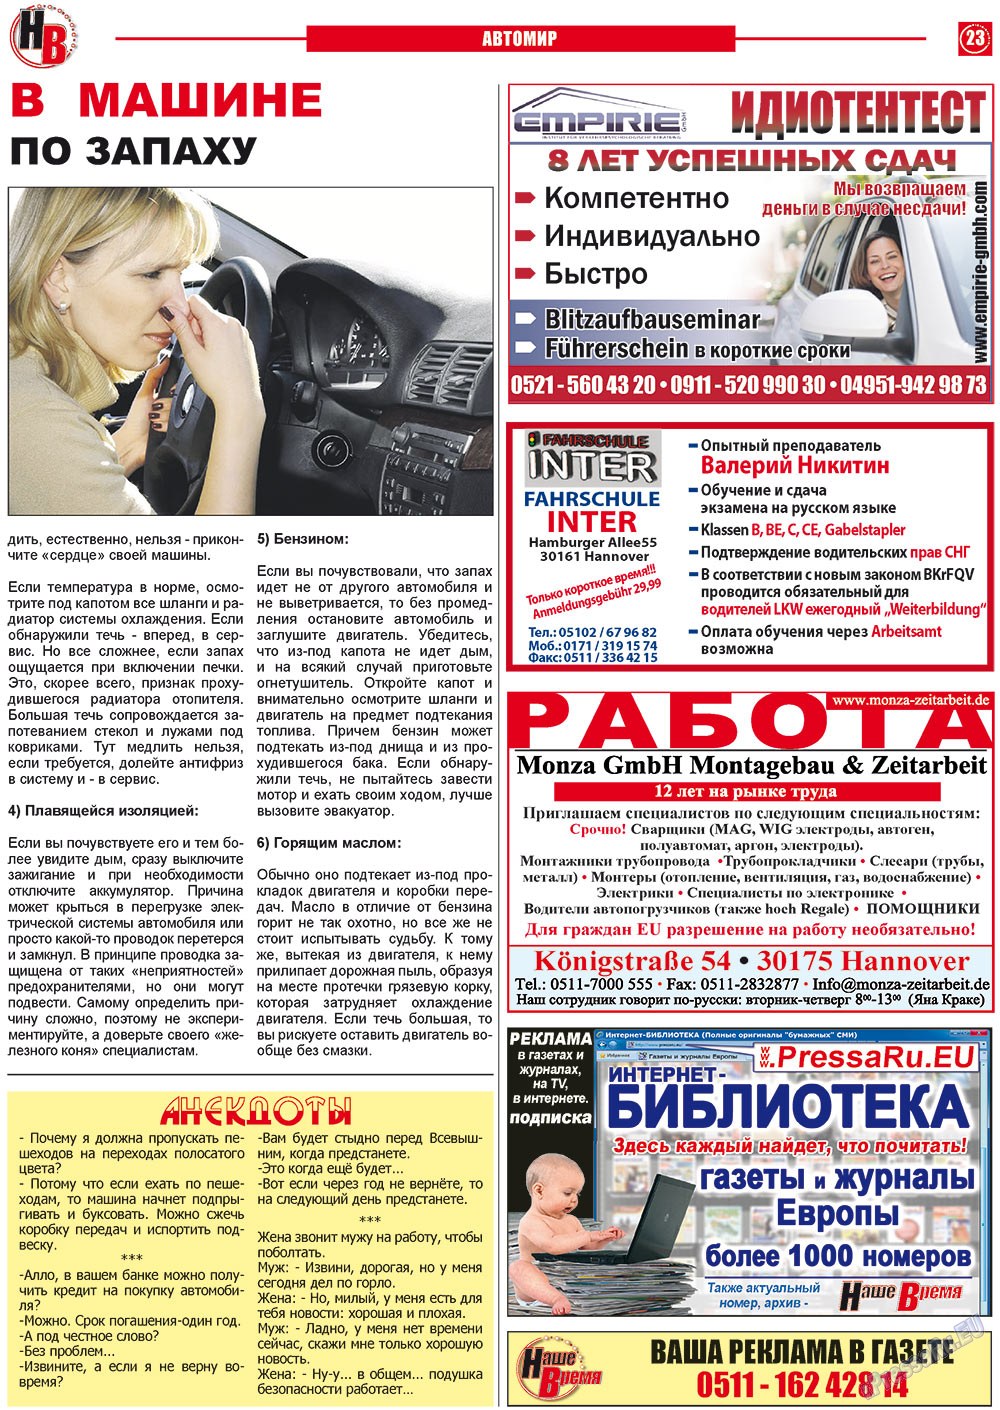 Наше время, газета. 2012 №6 стр.23